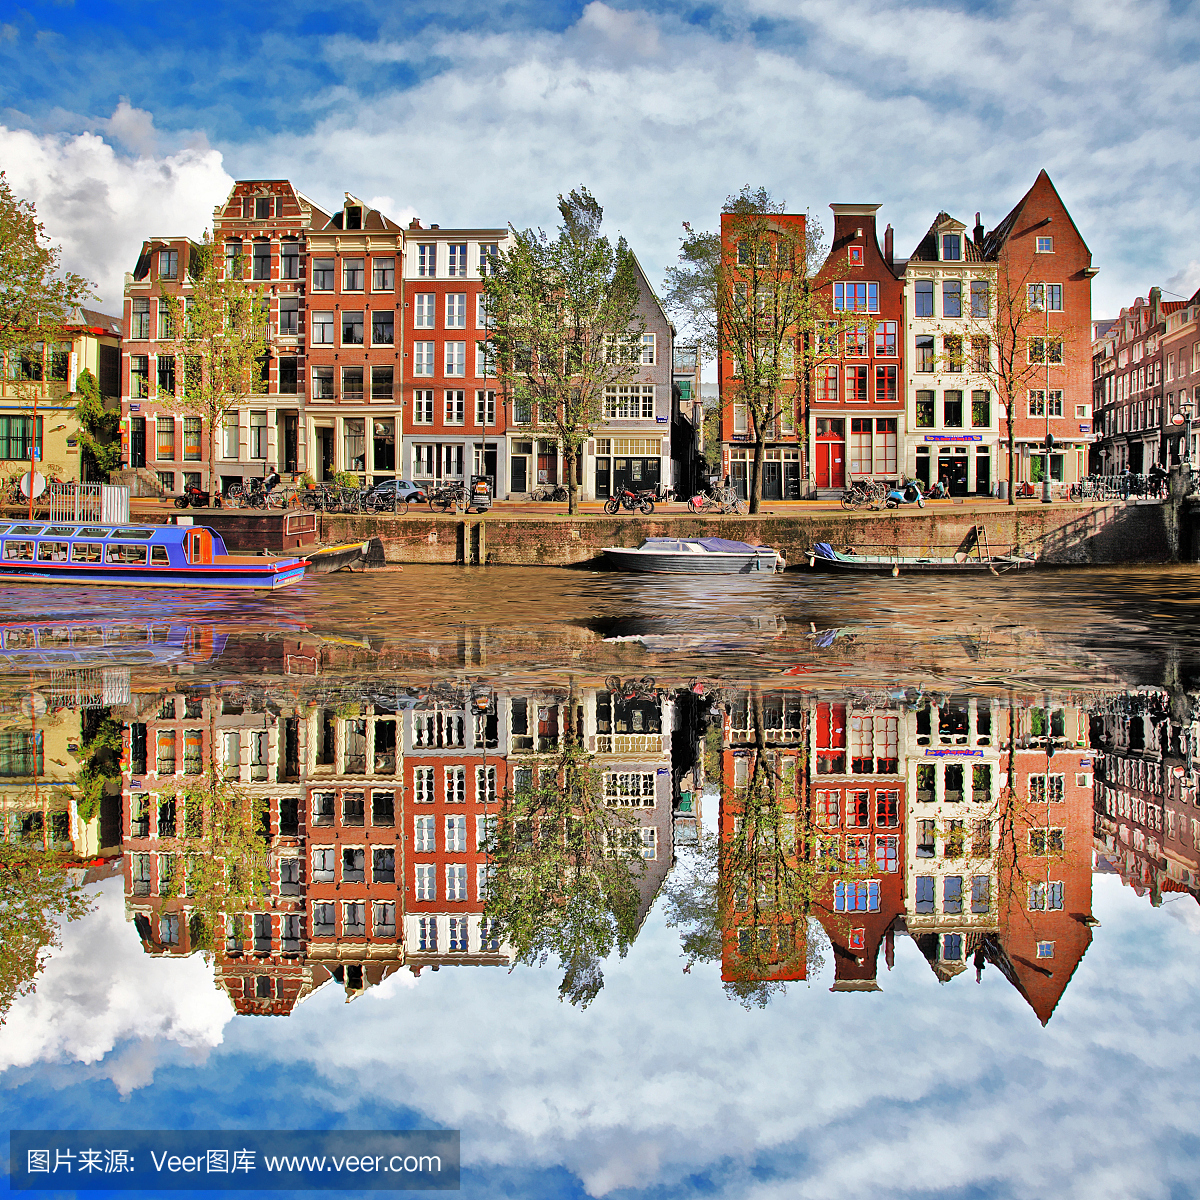 阿姆斯特丹,荷兰城市,荷兰首都,运河